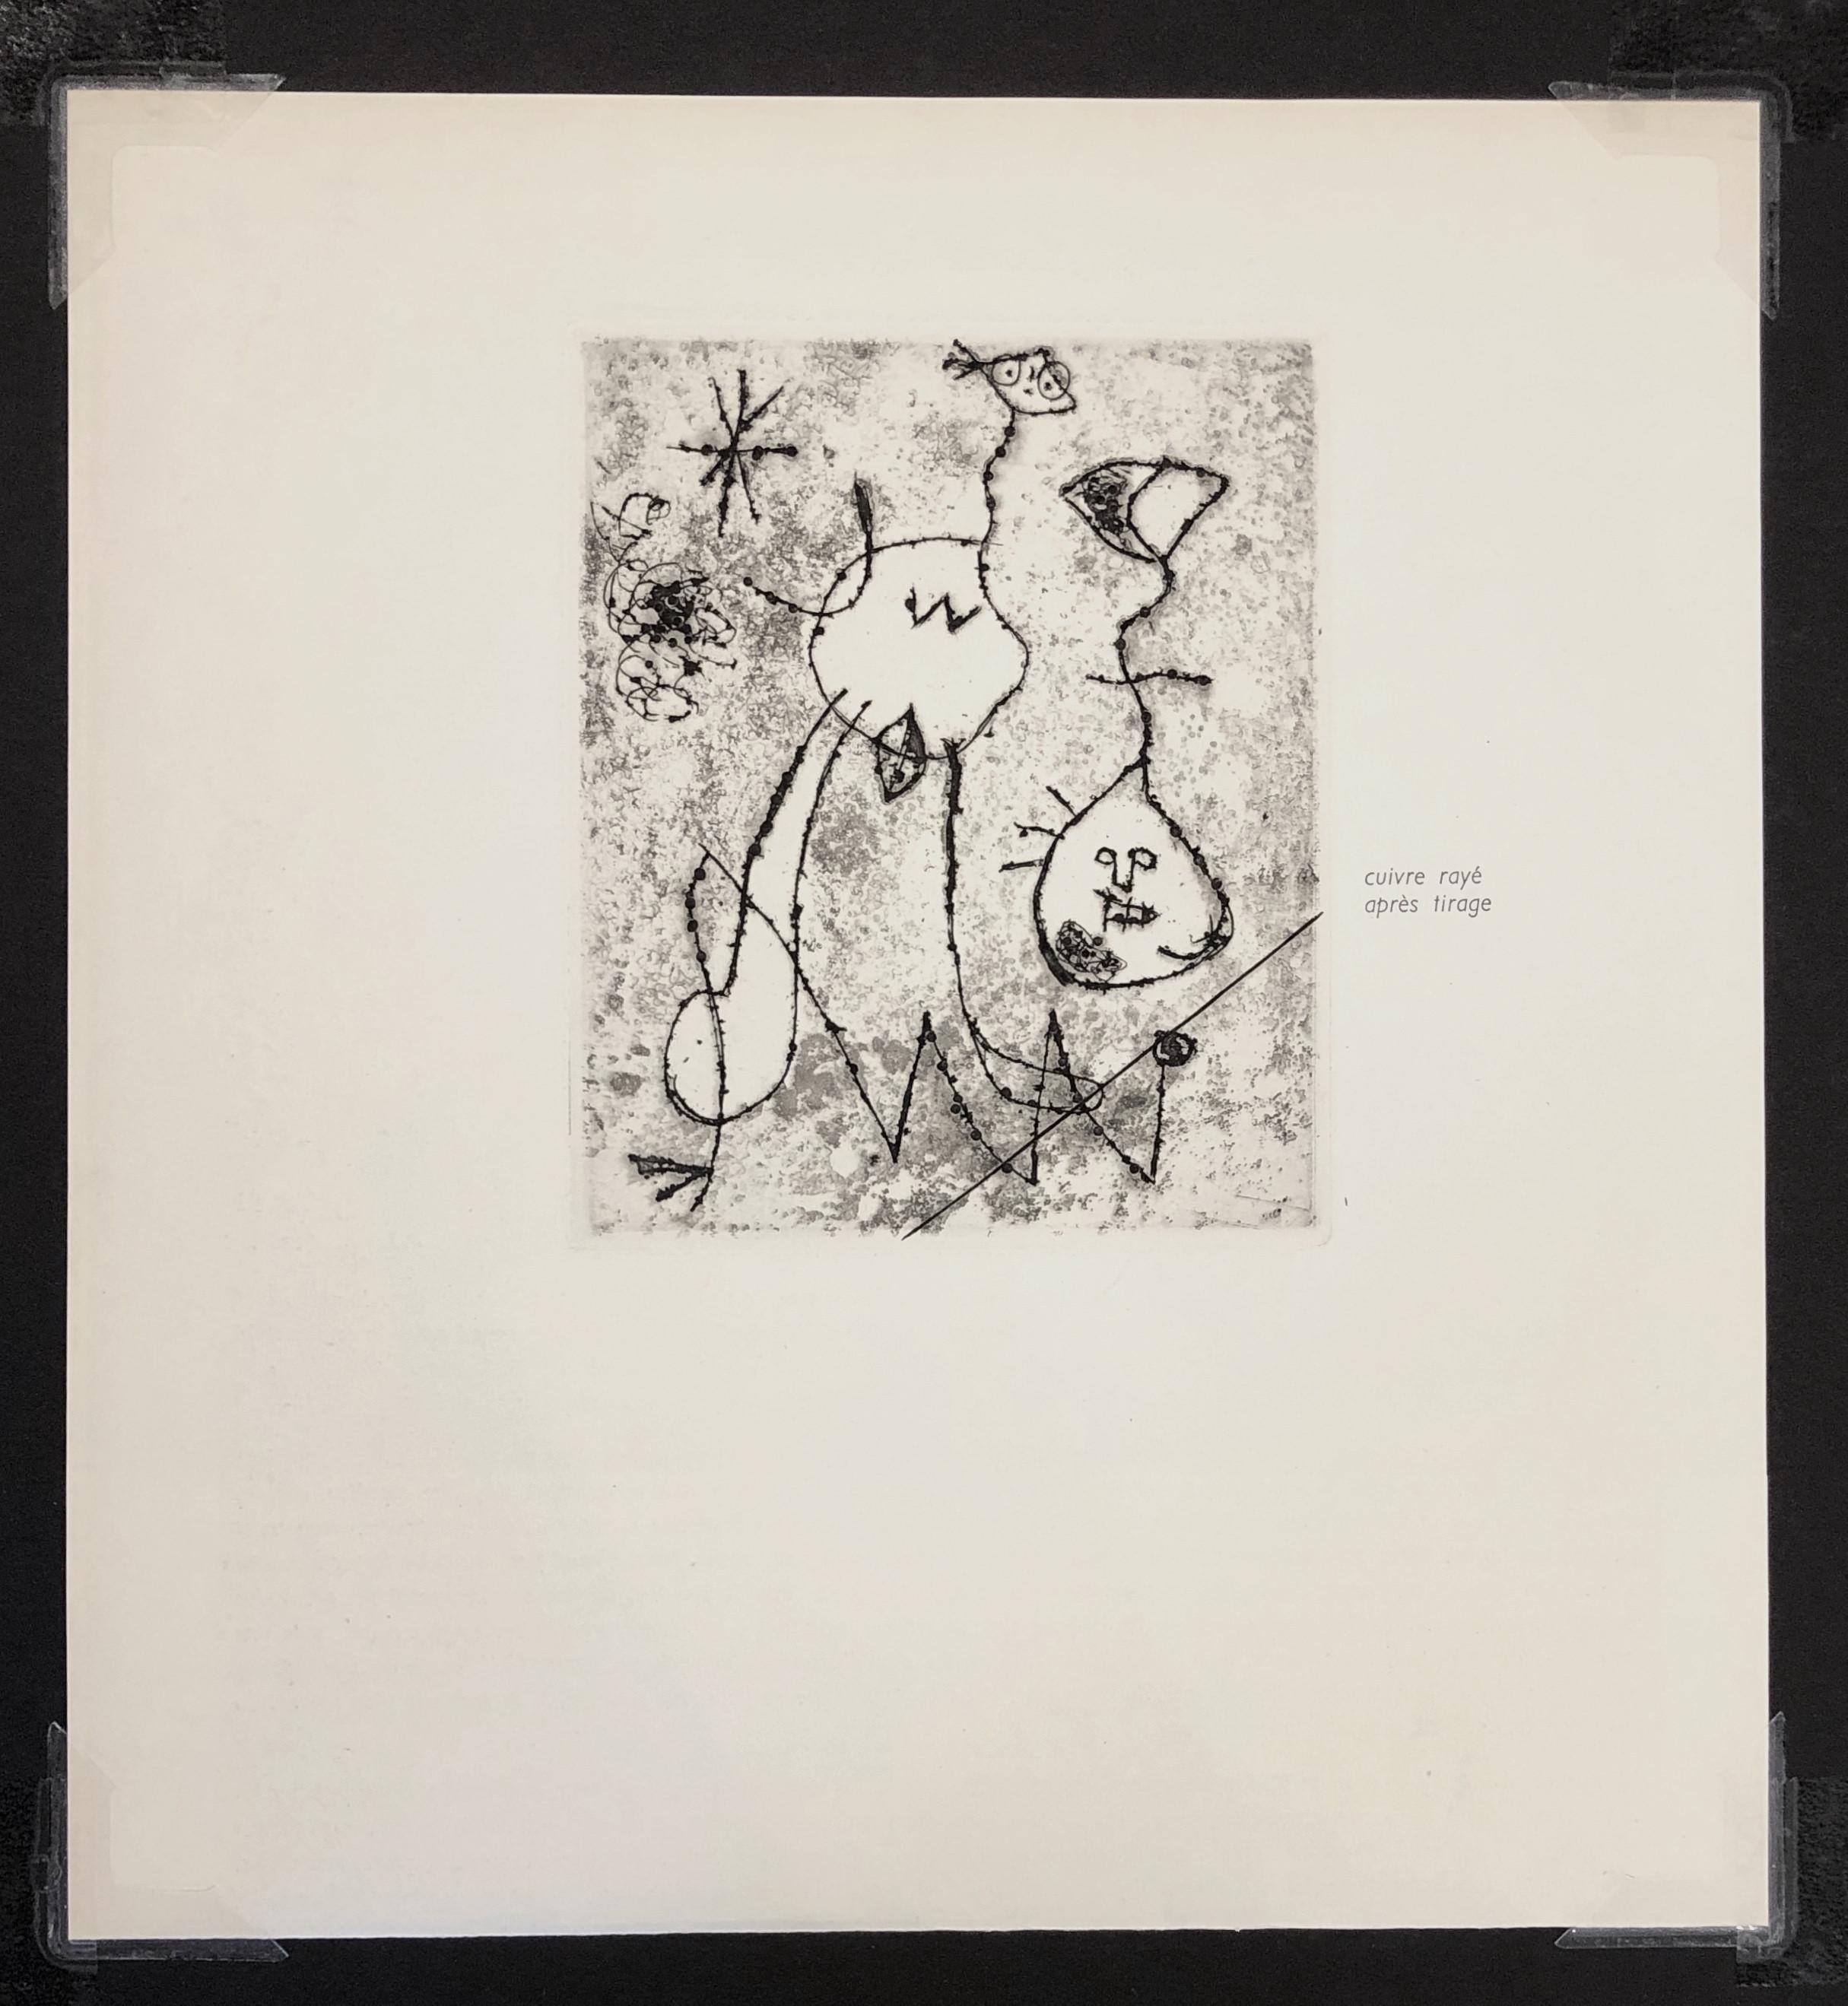 Serie V - Beige Figurative Print by Joan Miró